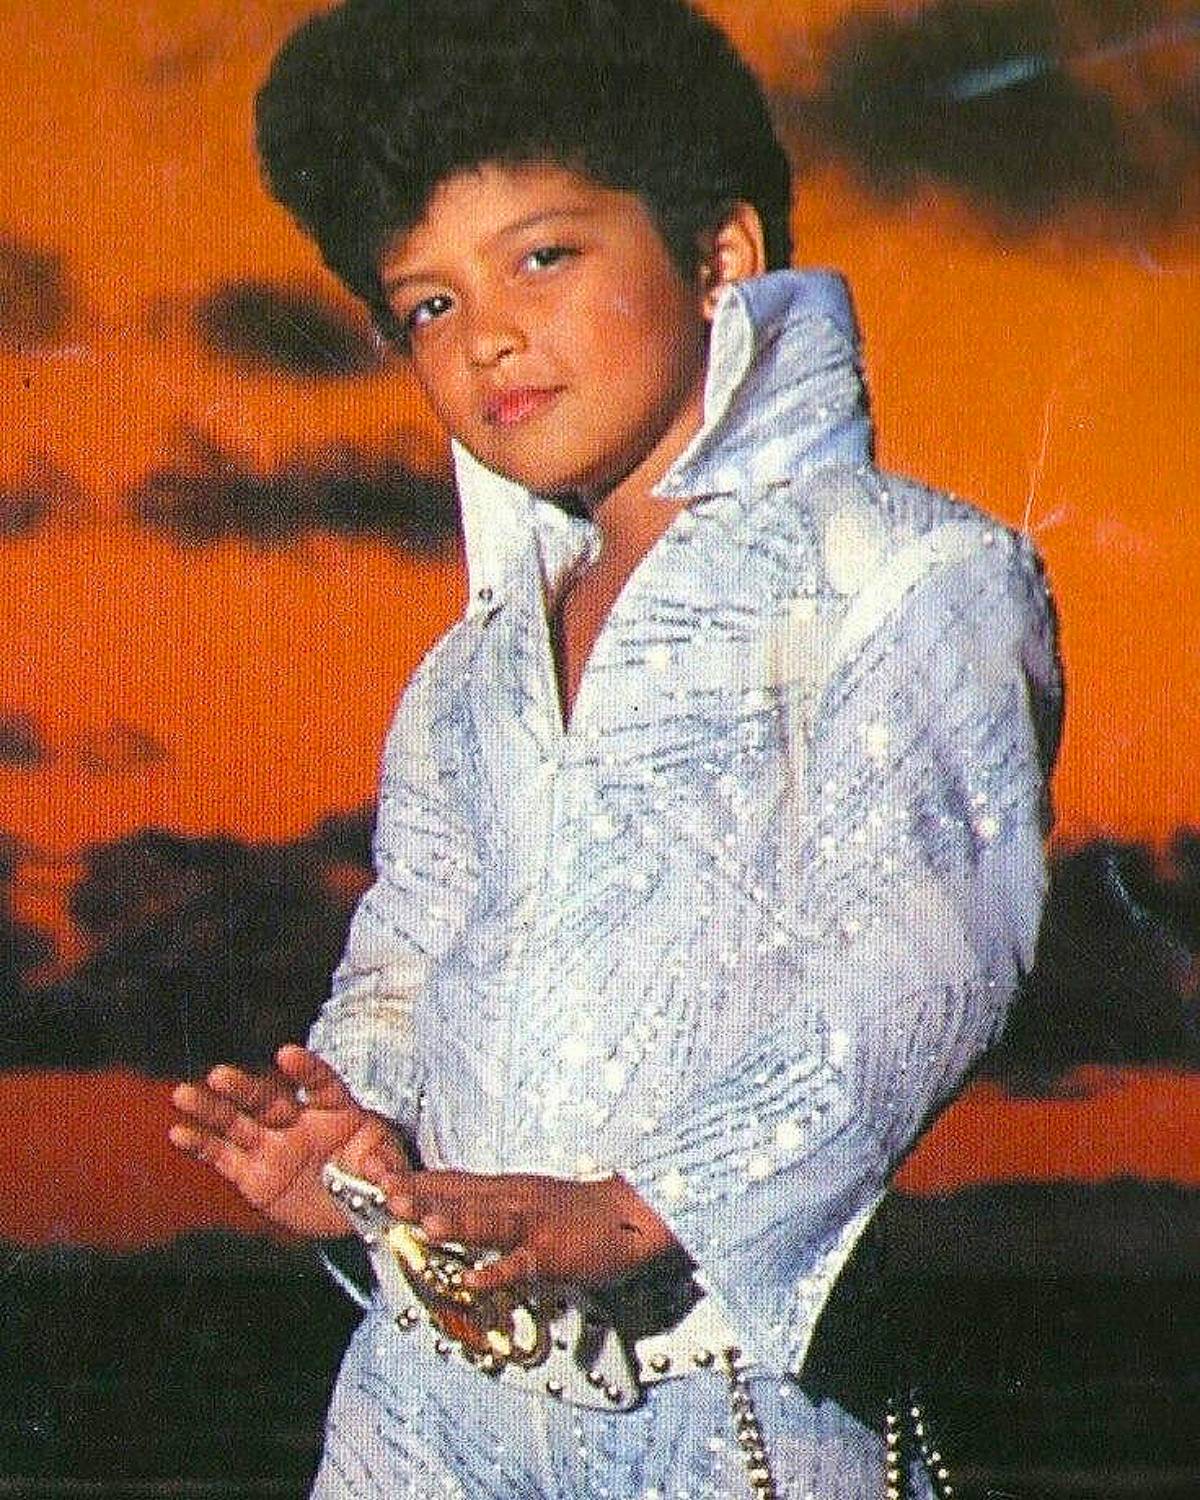 El pequeño Bruno Mars como Elvis Presley